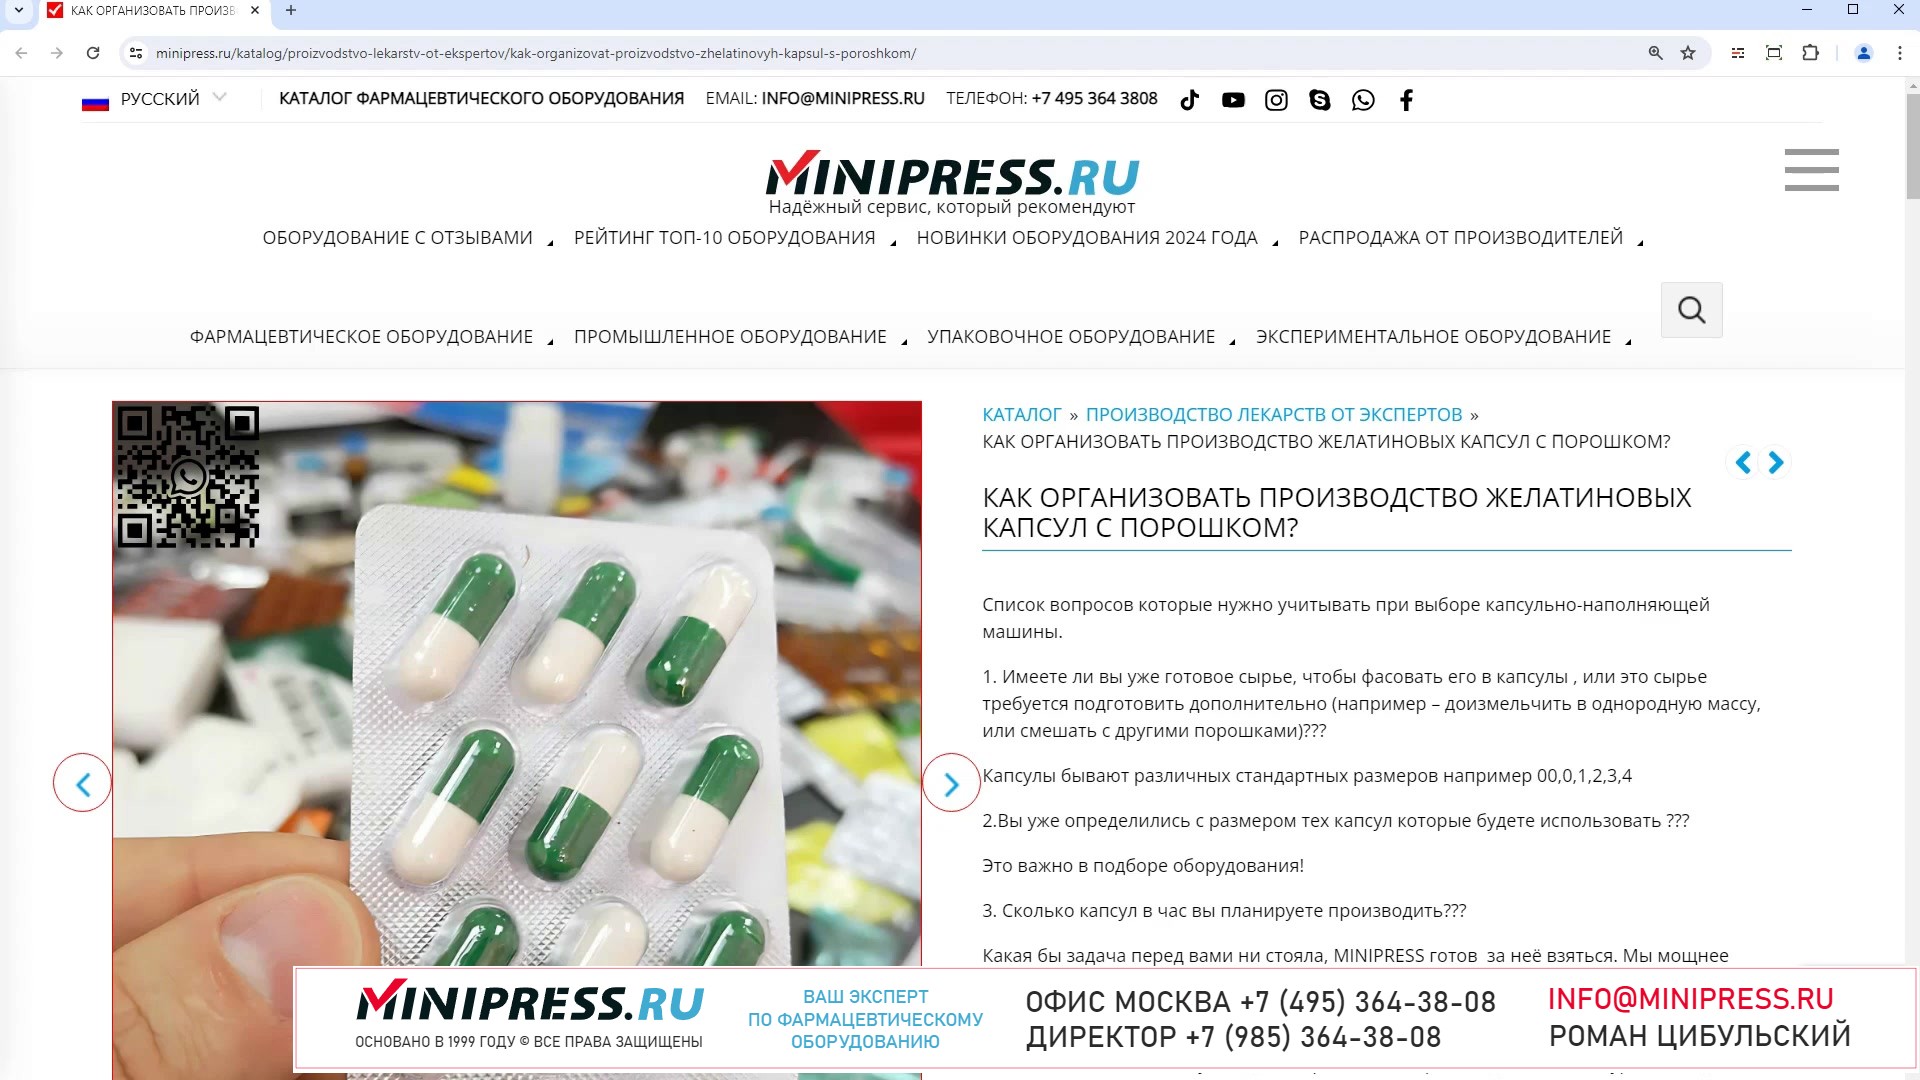 Minipress.ru Как организовать производство желатиновых капсул с порошком